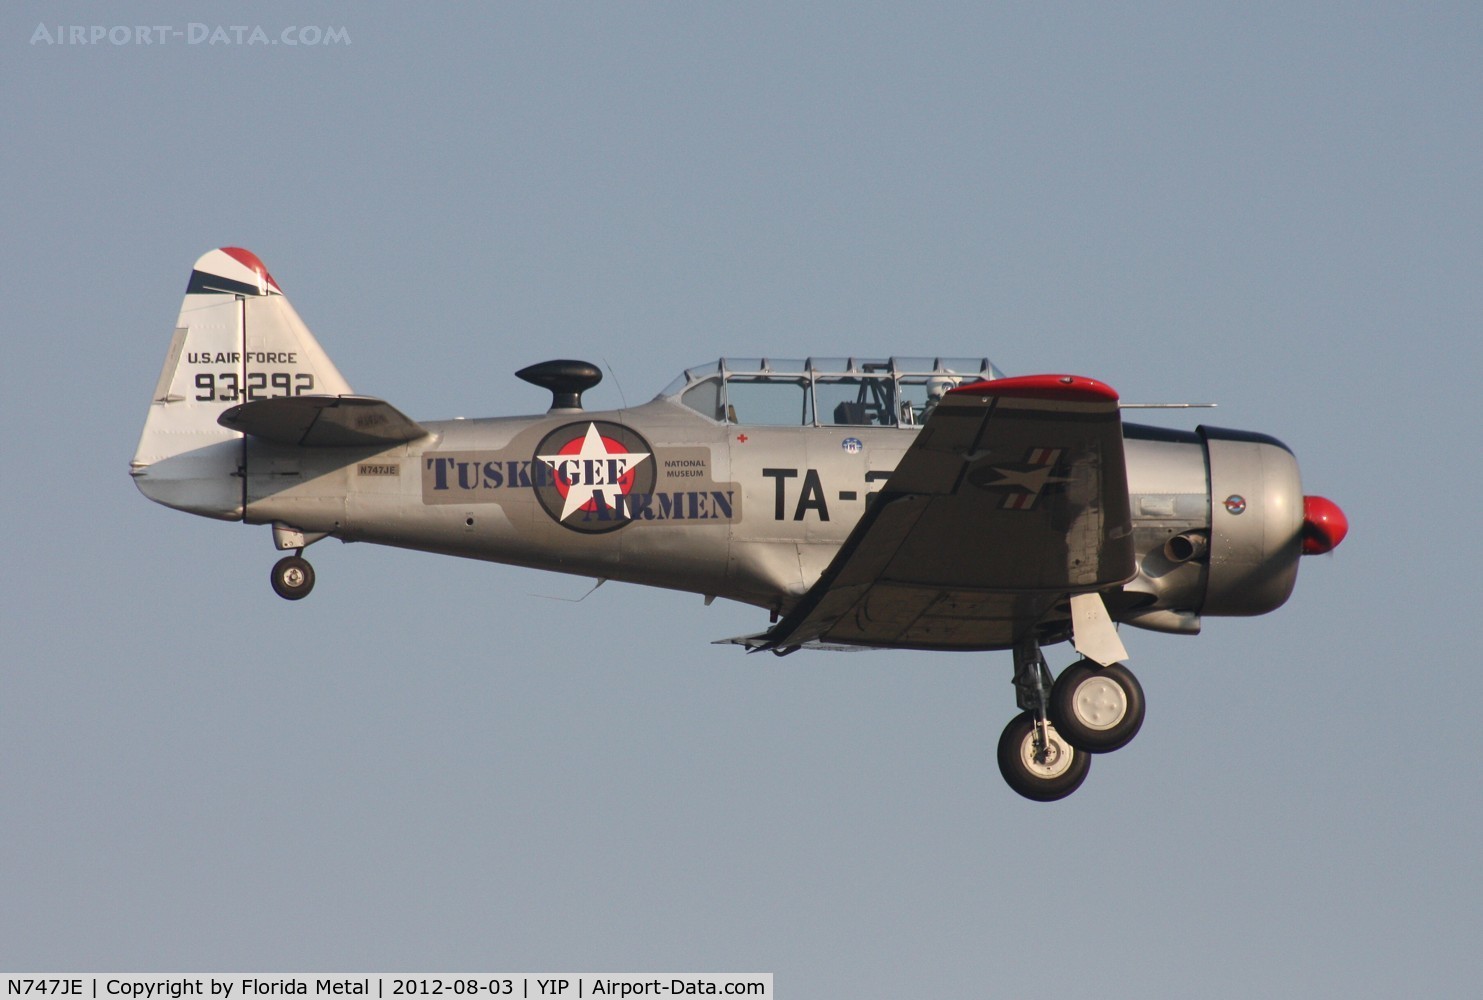 N747JE, 1958 North American AT-6G Texan C/N 168-394 (49-3292), Tuskegee Airmen T-6